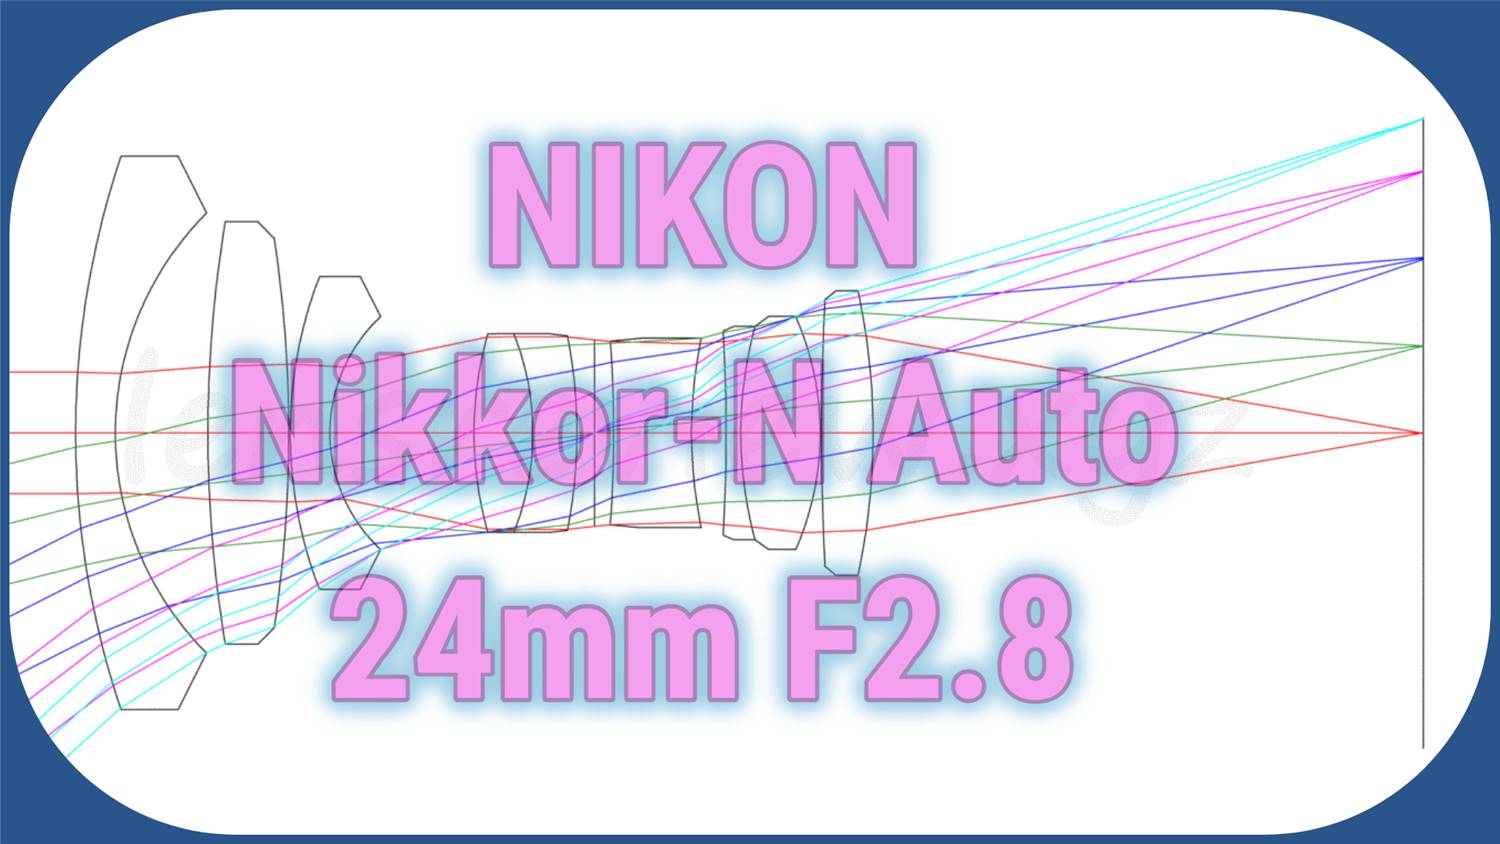 カメラ レンズ(単焦点) レンズのプロが解説】NIKON Nikkor-N Auto 24mm F2.8 -分析082 - LENS 